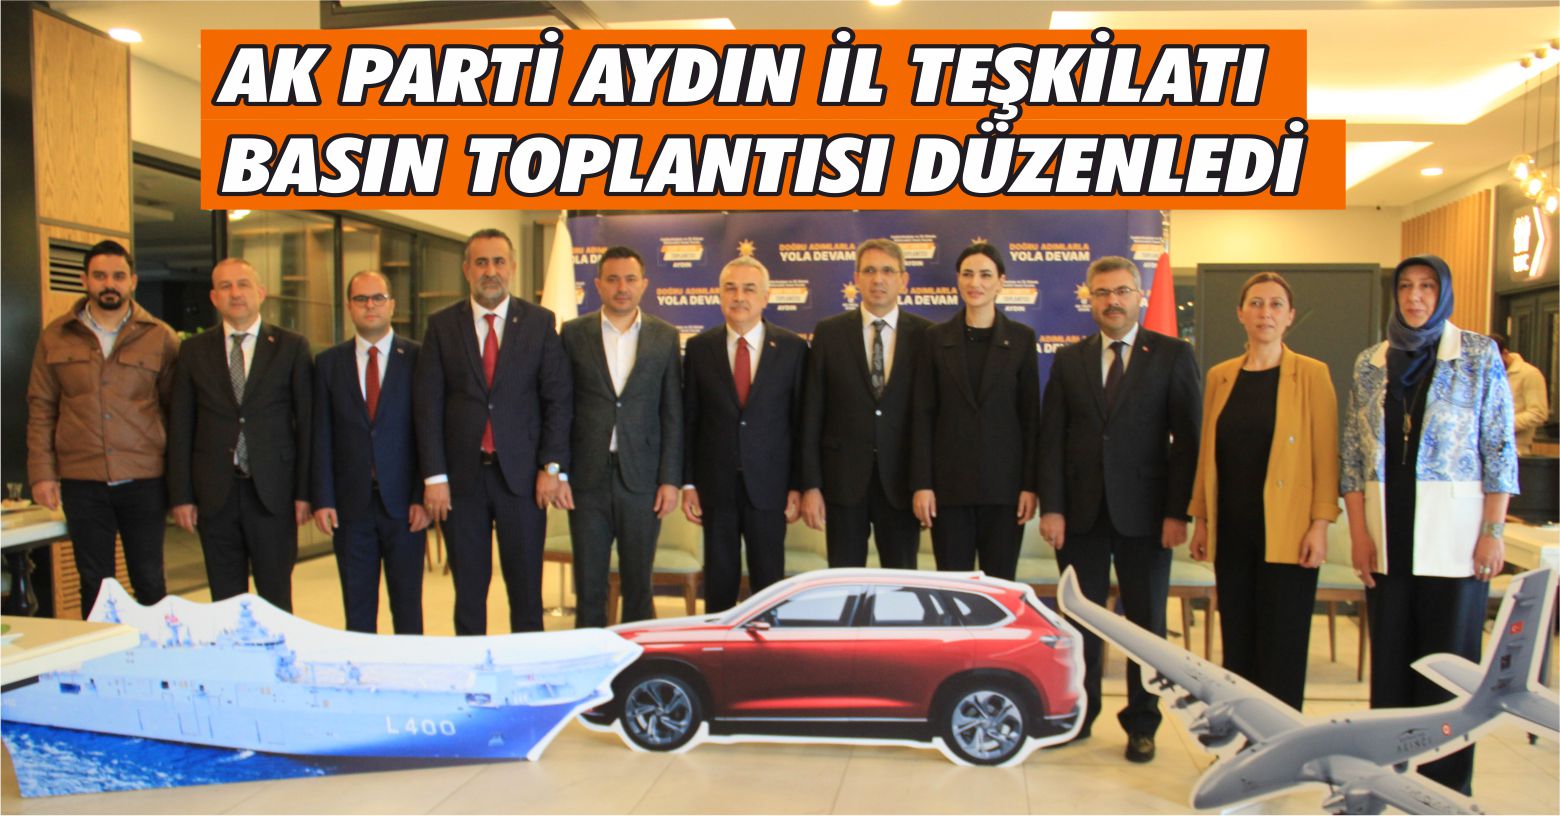 AK Parti Aydın İl Teşkilatı’ndan İHA, SİHA, TCG Anadolu ve TOGG’lu basın toplantısı